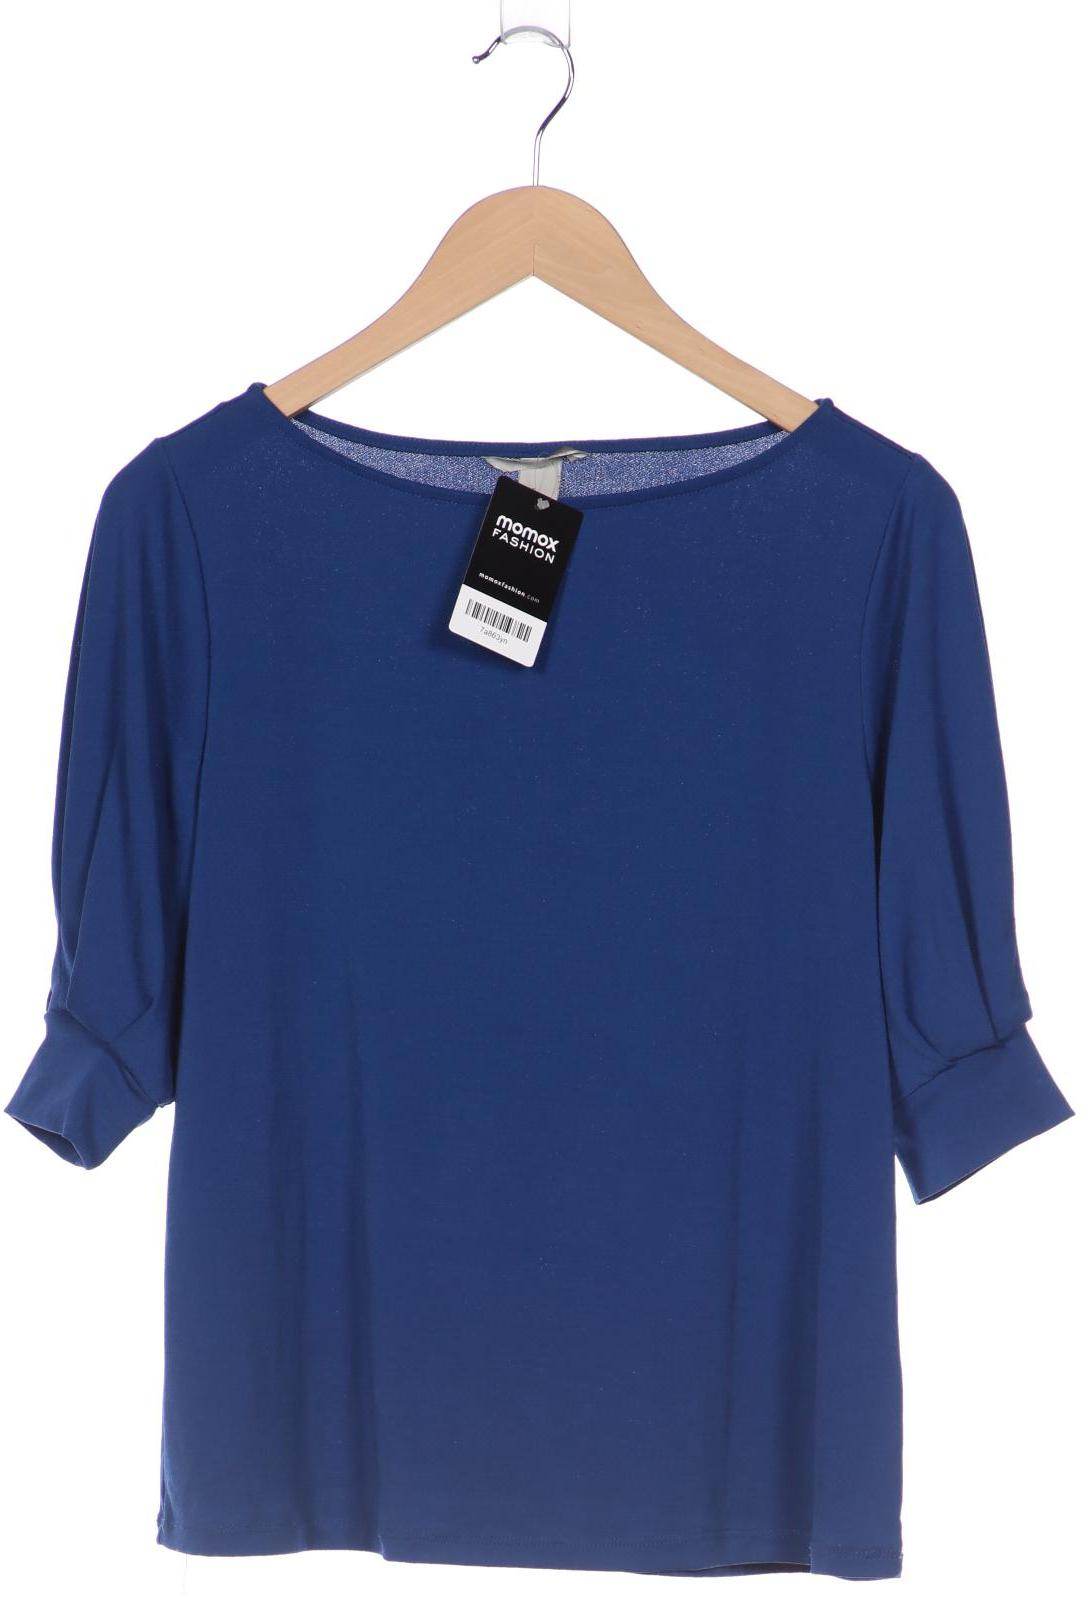 H&M Damen T-Shirt, blau, Gr. 38 von H&M